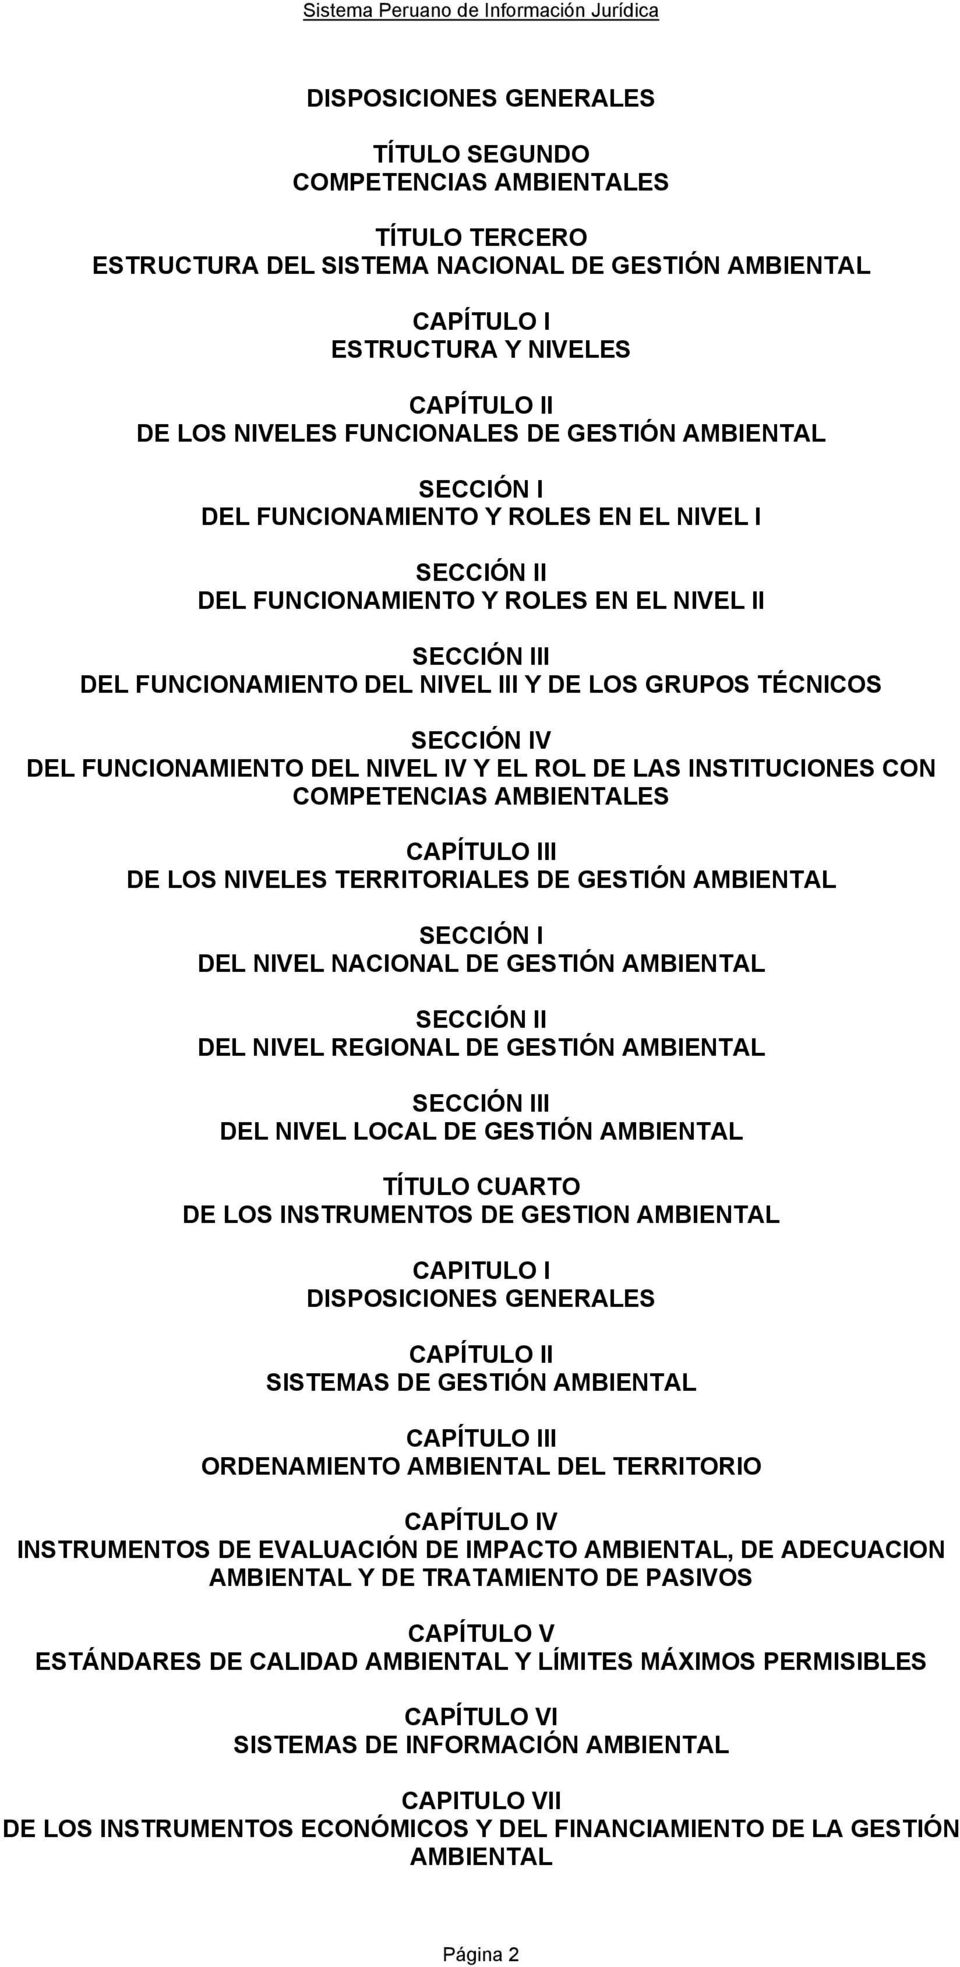 TÉCNICOS SECCIÓN IV DEL FUNCIONAMIENTO DEL NIVEL IV Y EL ROL DE LAS INSTITUCIONES CON COMPETENCIAS AMBIENTALES CAPÍTULO III DE LOS NIVELES TERRITORIALES DE GESTIÓN AMBIENTAL SECCIÓN I DEL NIVEL